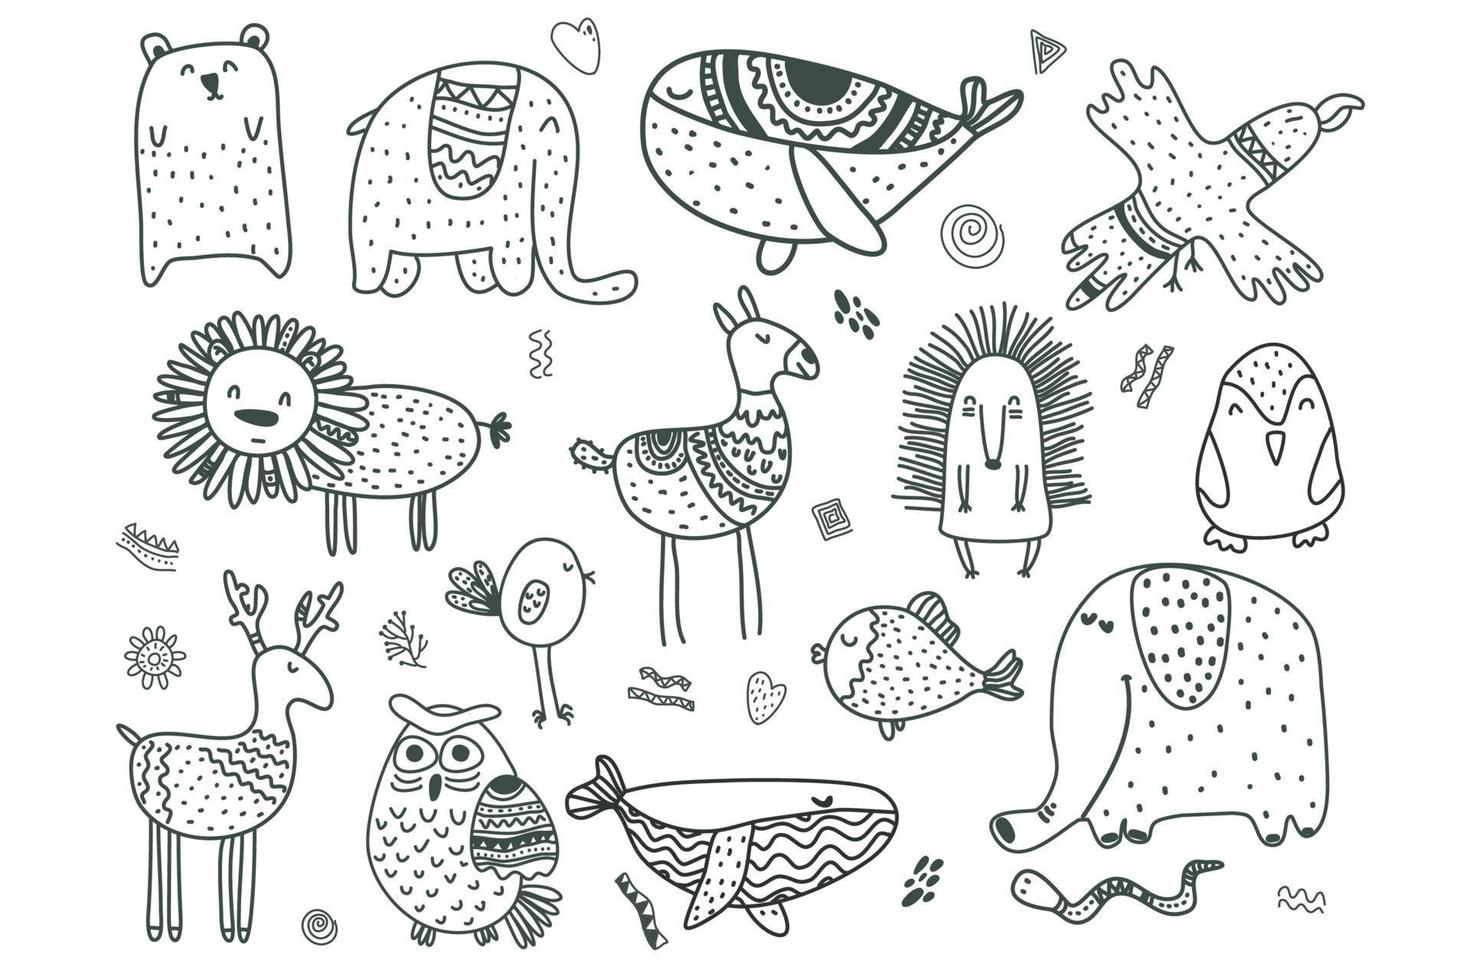 animais e elementos das crianças escandinavas. conjunto de vetores preto e branco de animais de doodle estilo scandi.